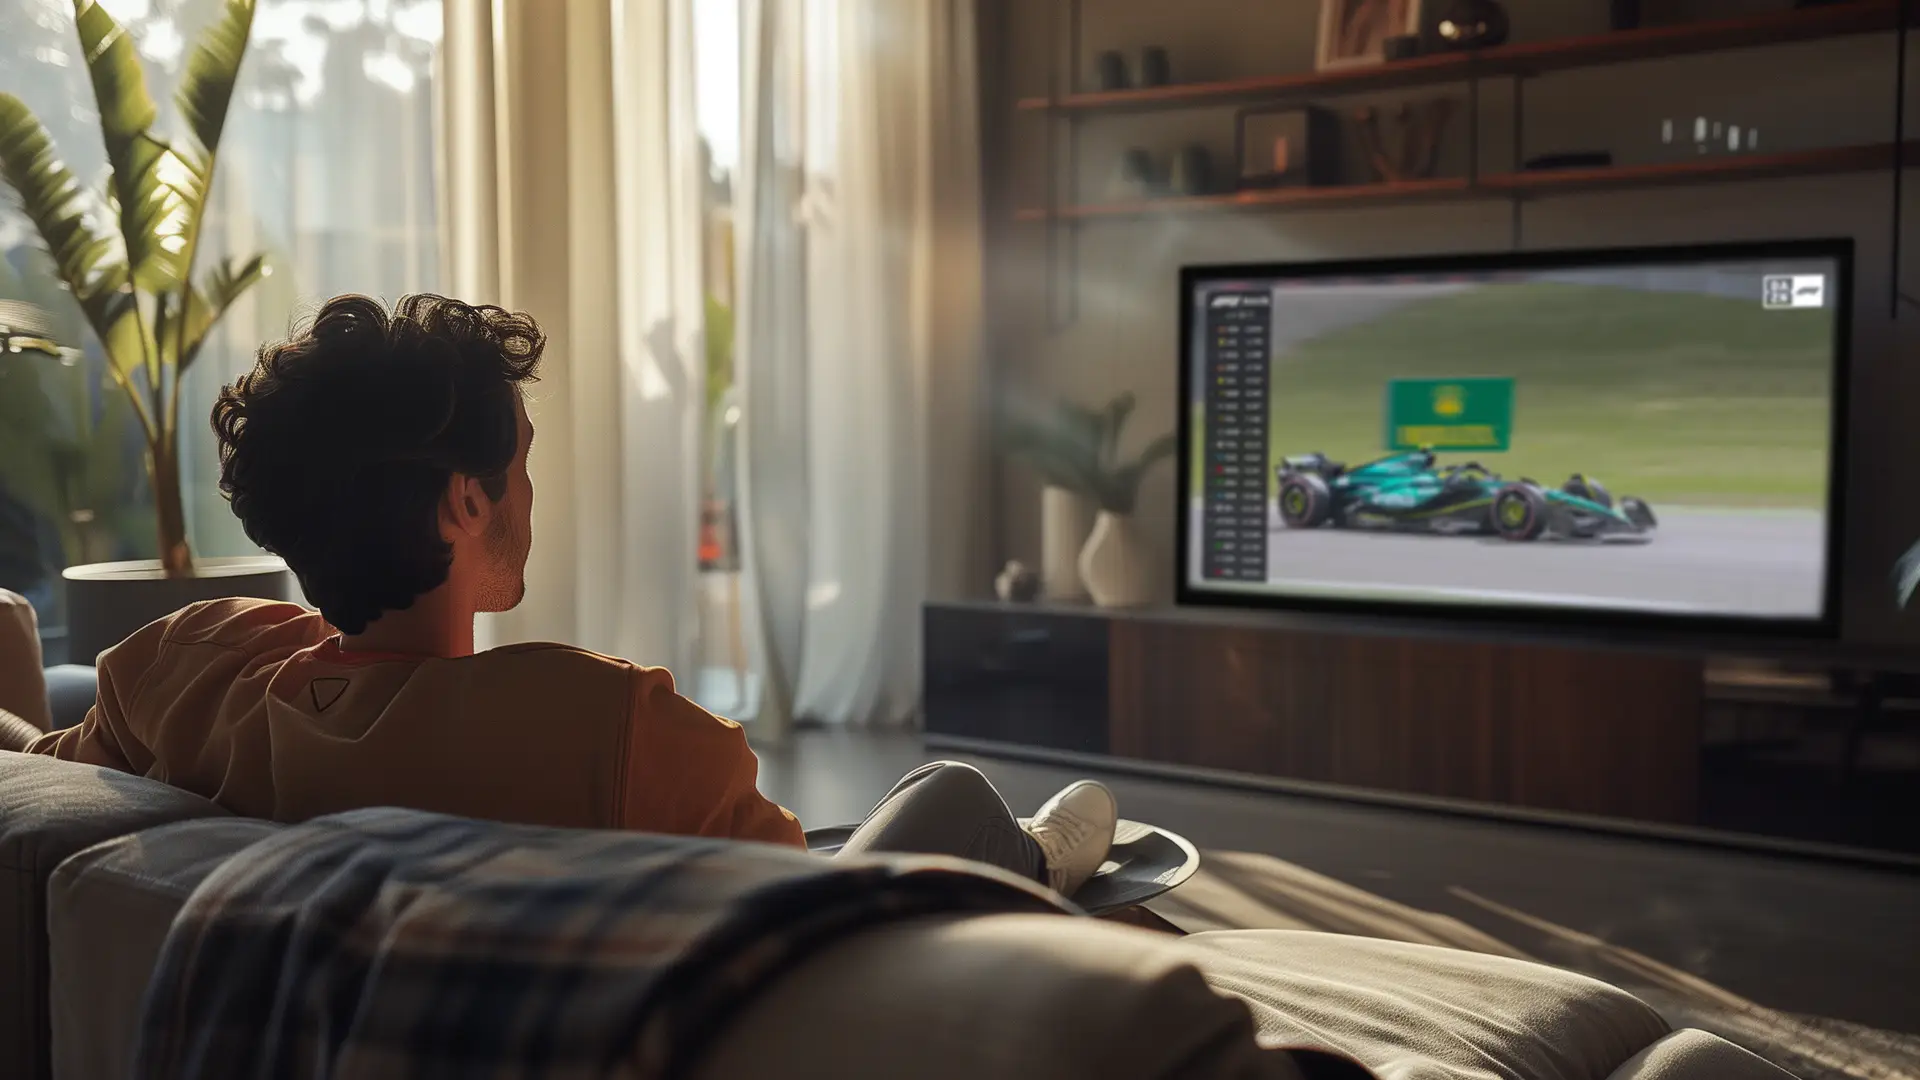 Un joven viendo la Fórmula 1 en su televisión porque tiene contratada la tv con deportes de motor.